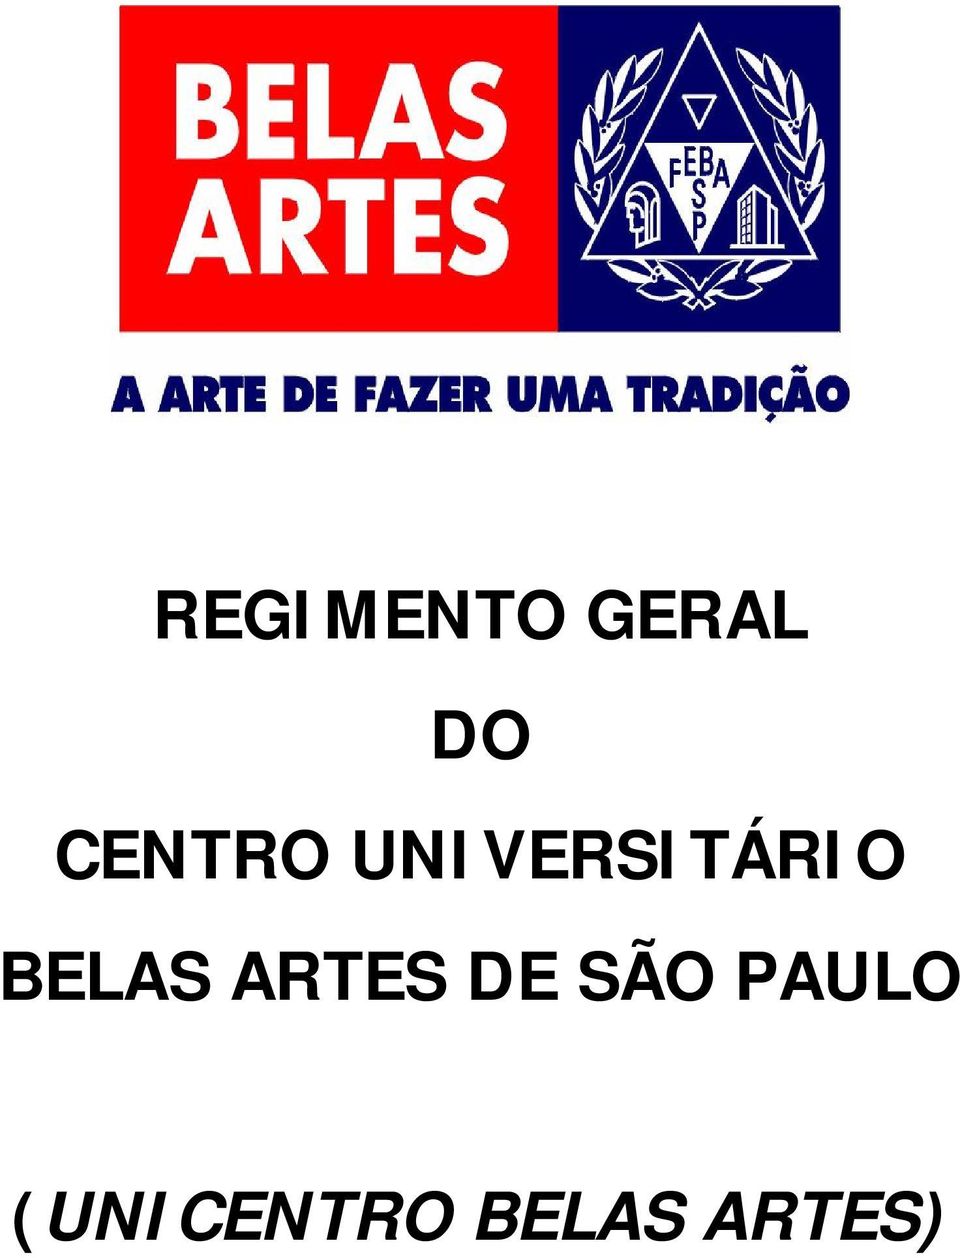 BELAS ARTES DE SÃO